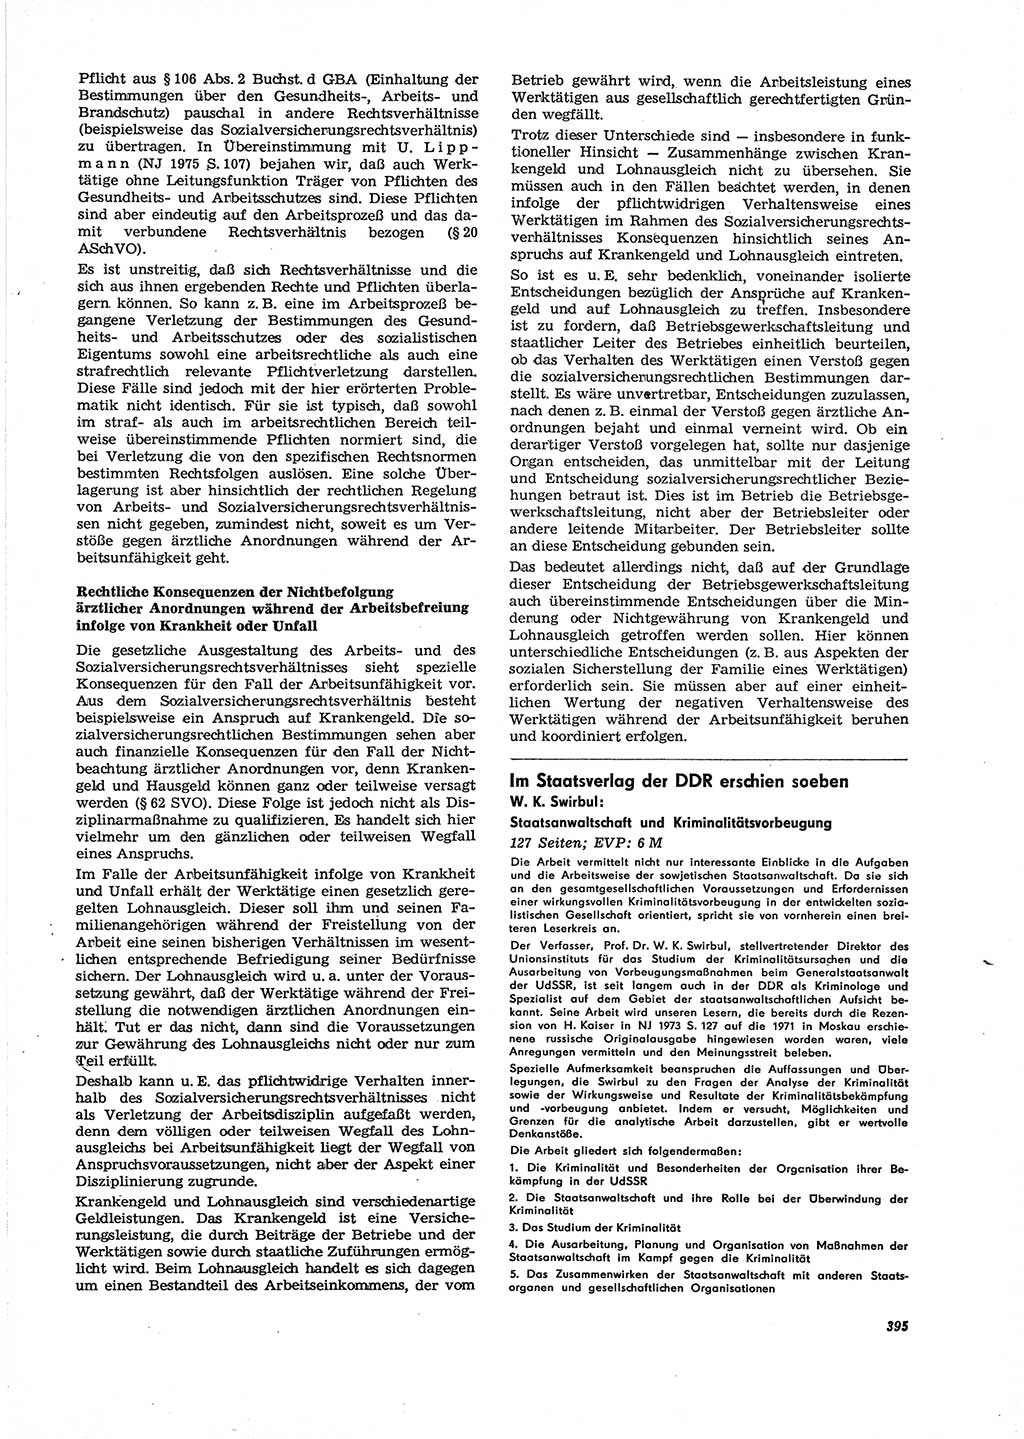 Neue Justiz (NJ), Zeitschrift für Recht und Rechtswissenschaft [Deutsche Demokratische Republik (DDR)], 29. Jahrgang 1975, Seite 395 (NJ DDR 1975, S. 395)